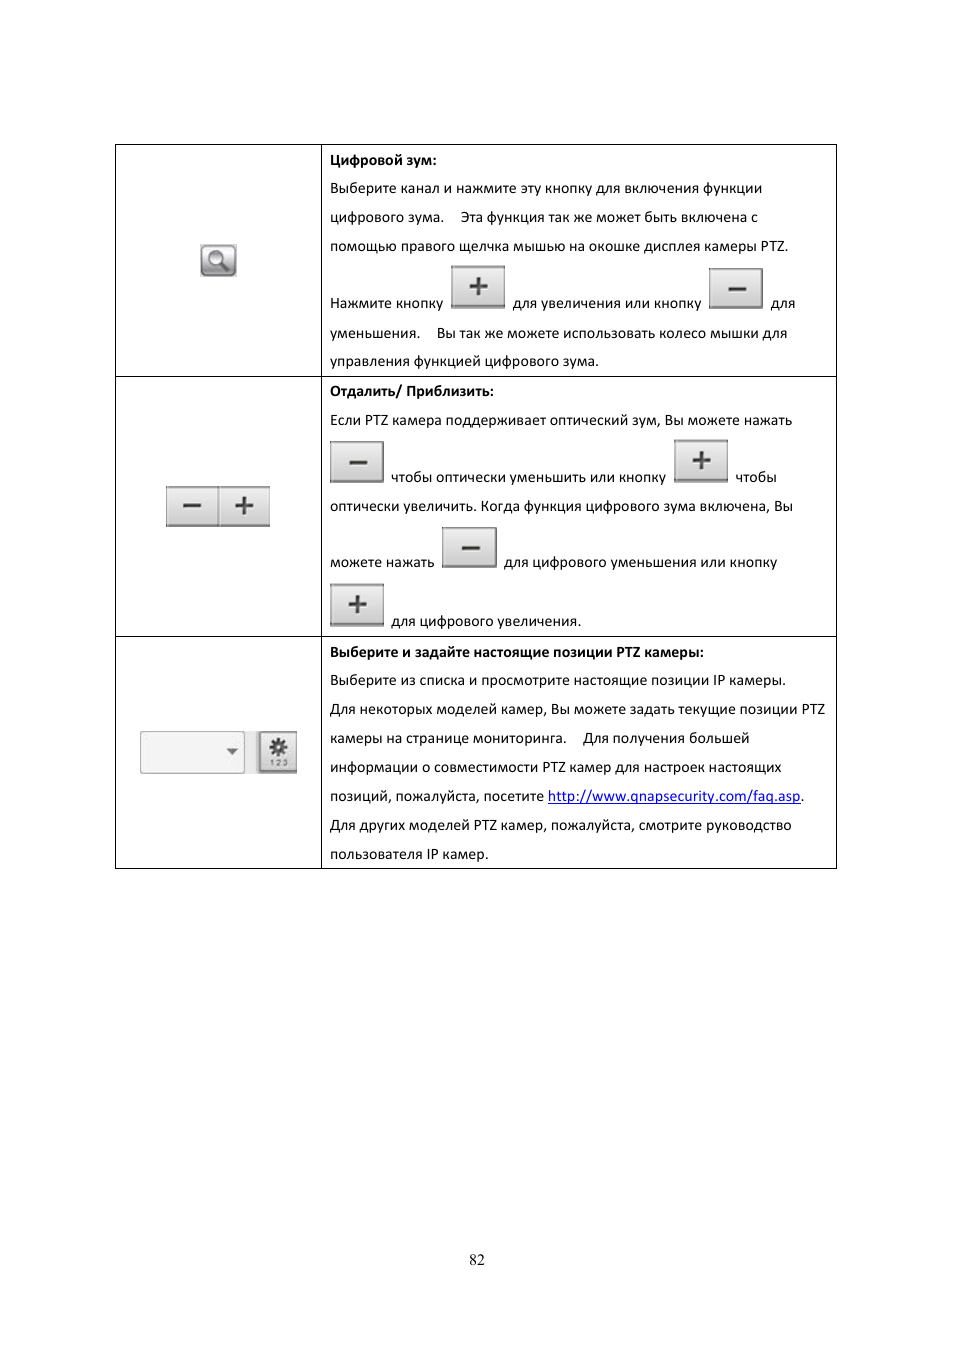 Инструкция по эксплуатации QNAP Security VioStor NVR (Version: 4.1.1) | Страница 82 / 260